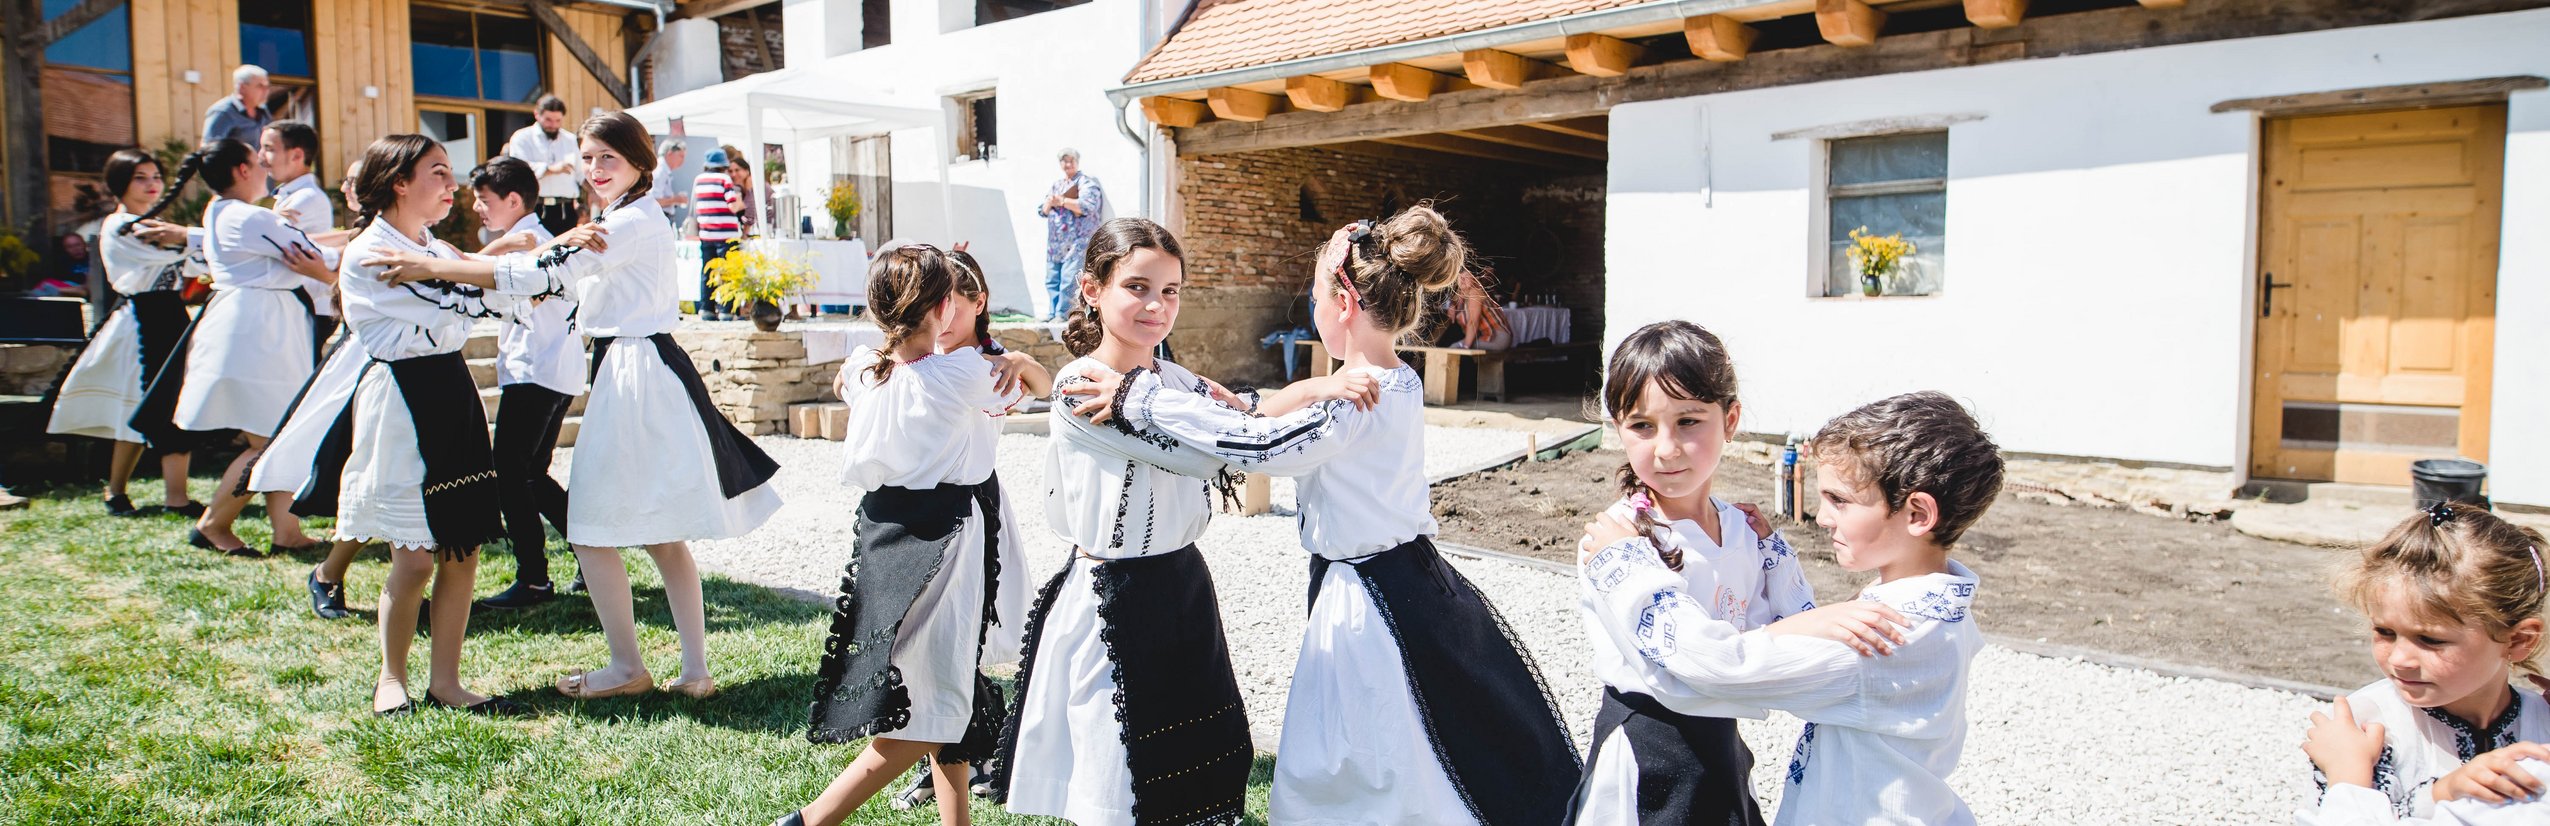 Rumänien Familienreise - Rumänien Reise mit Kindern - Aufführung von Kindern